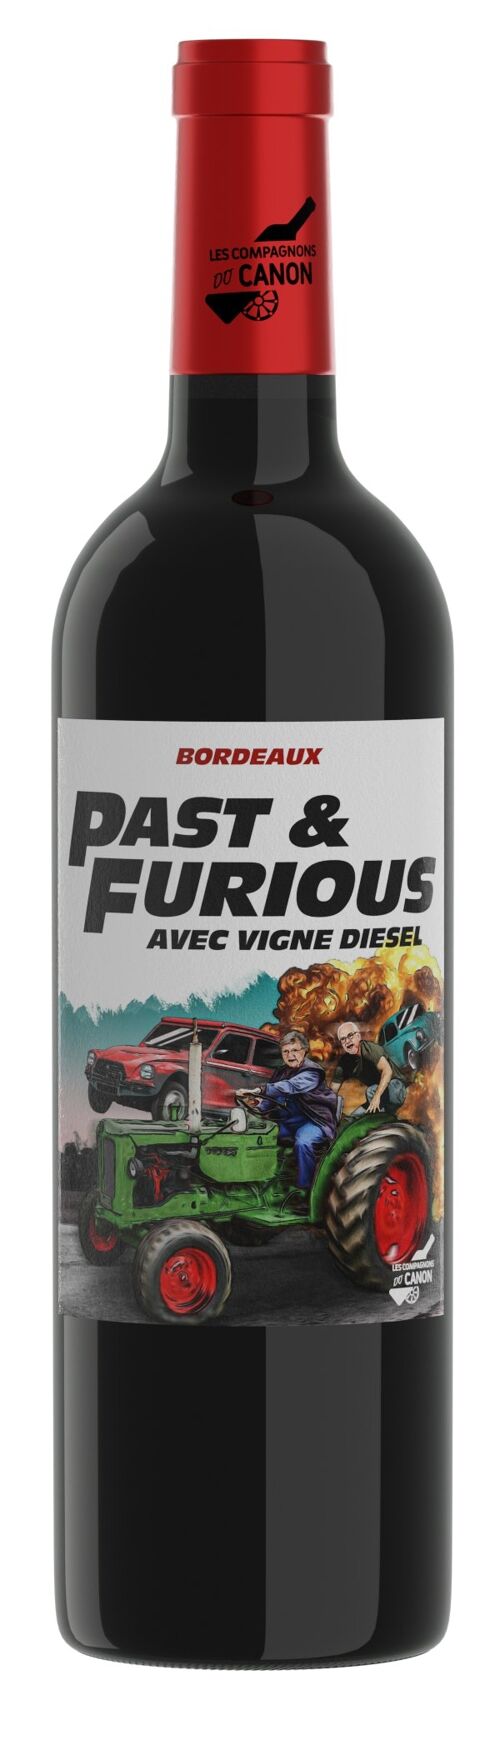 Past & Furious 2020 - Bordeaux